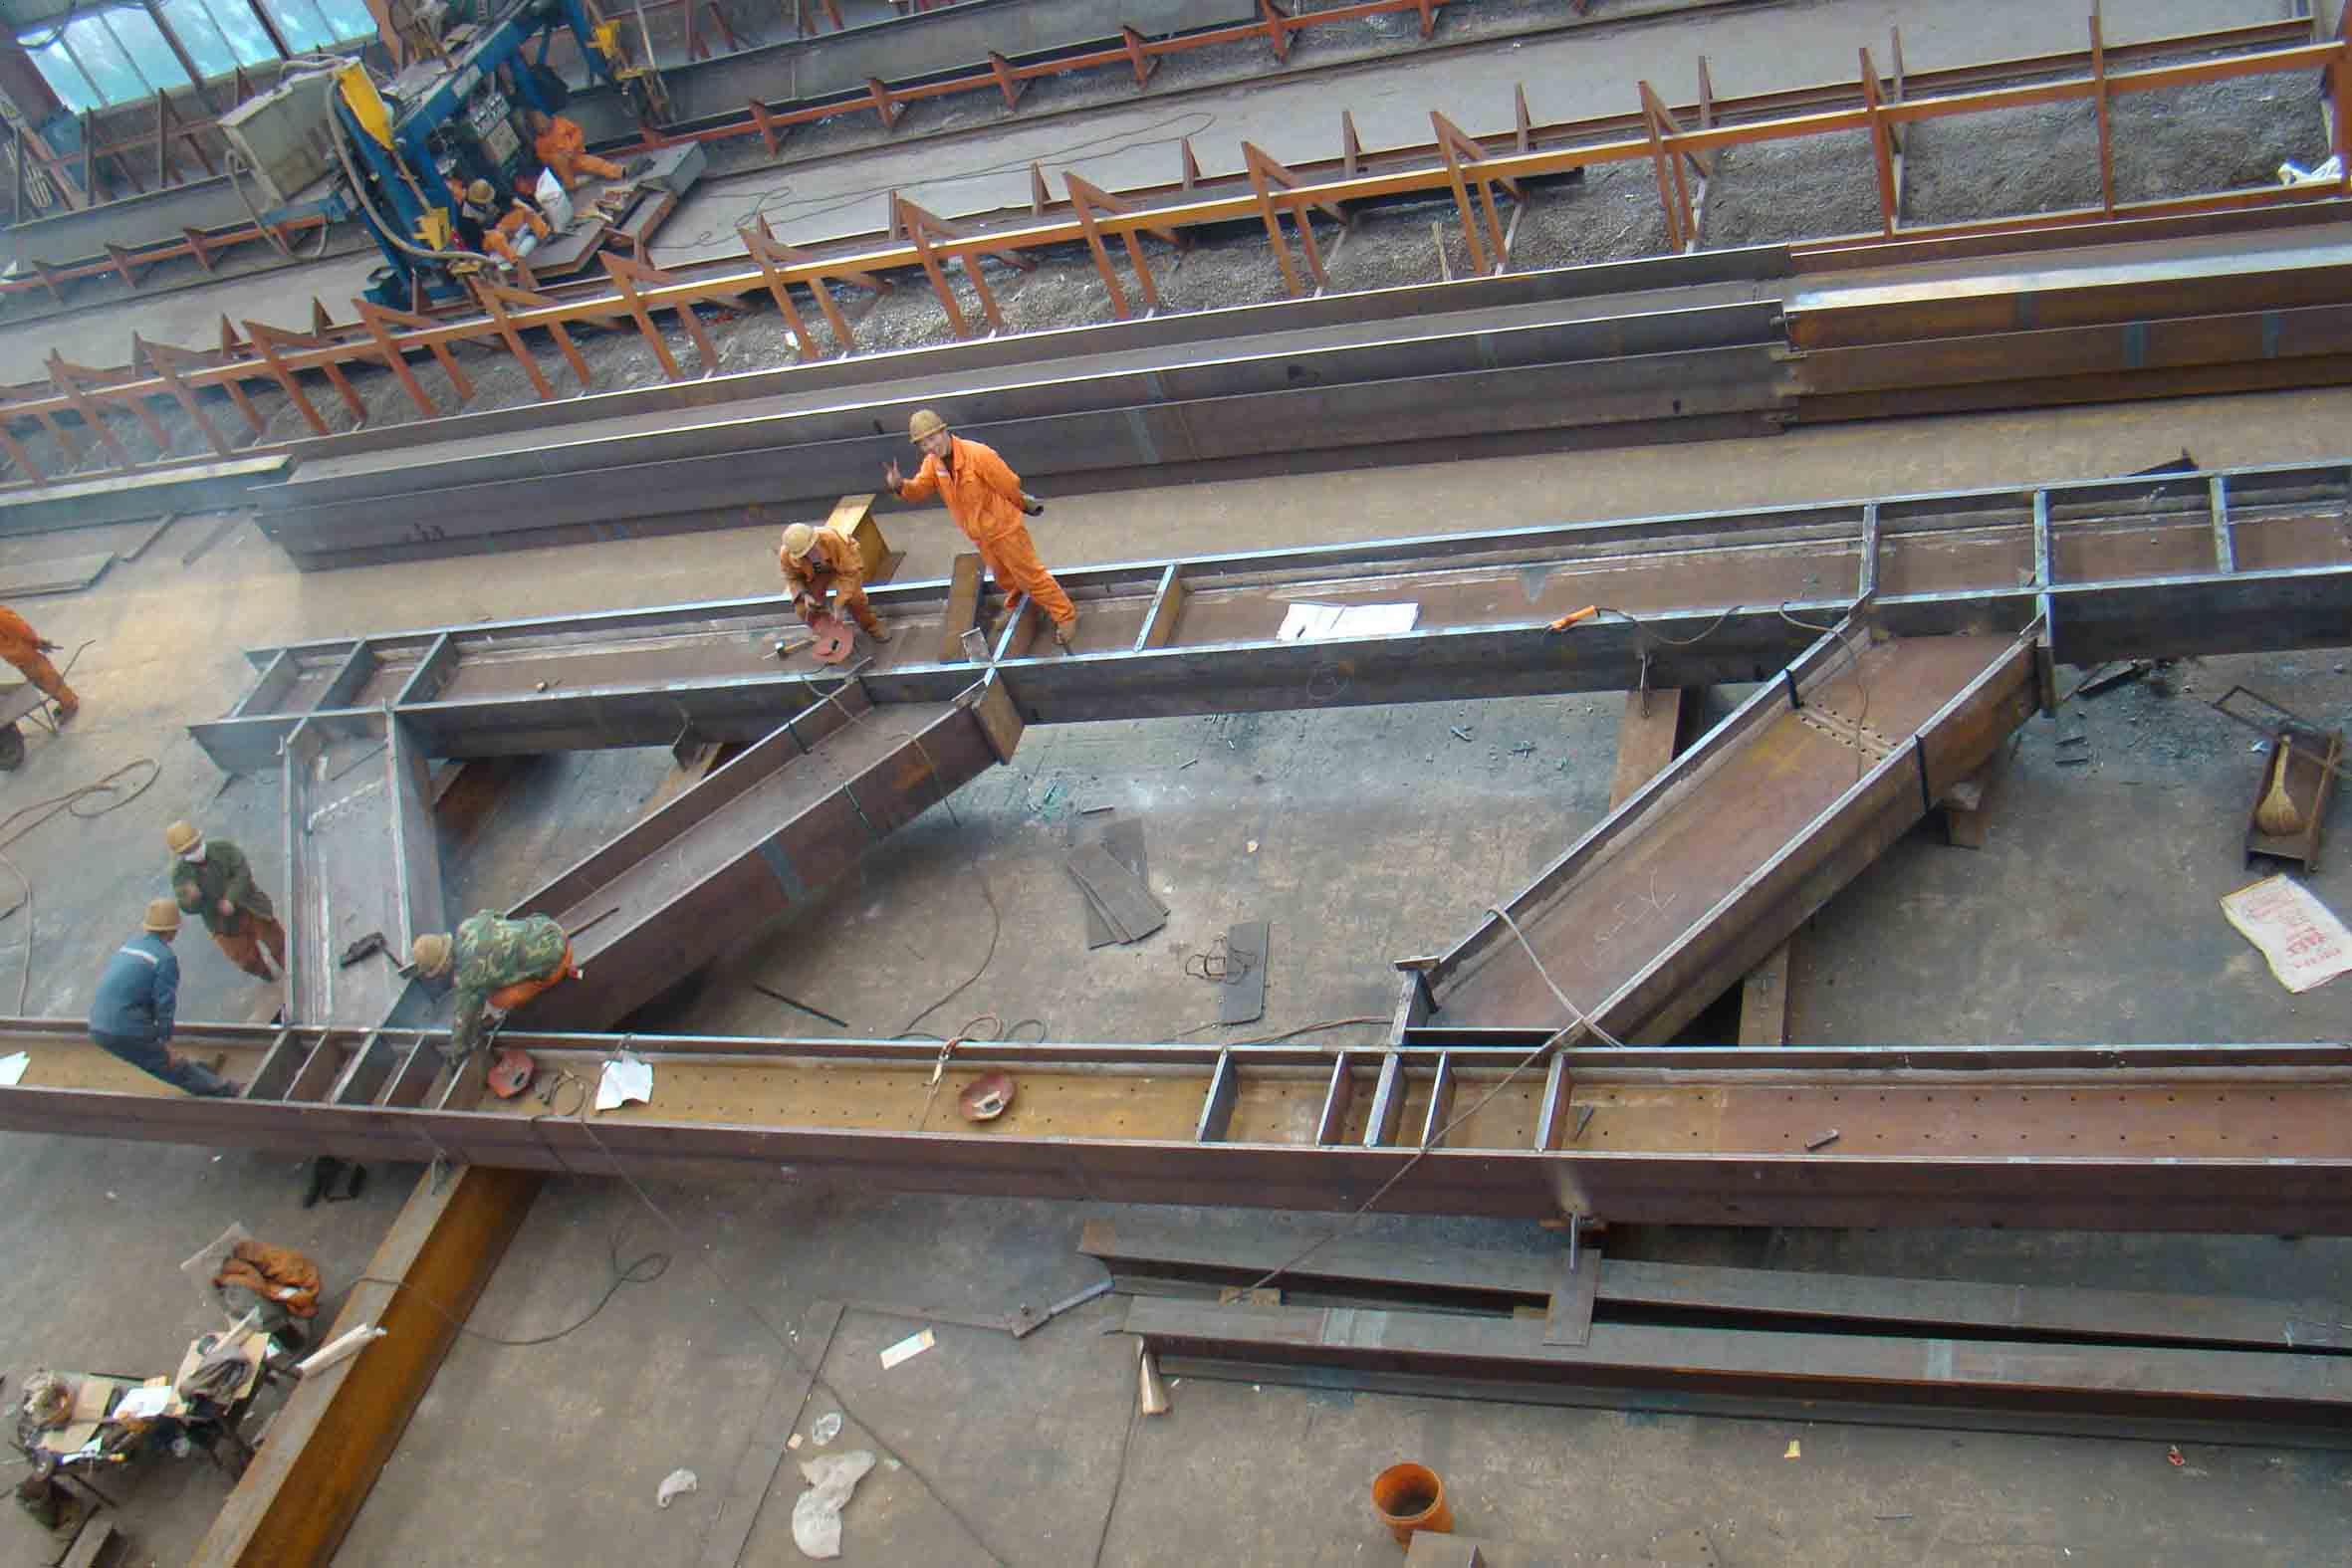 唐山朝阳钢结构工程有限公司是一家钢结构制作安装企业.